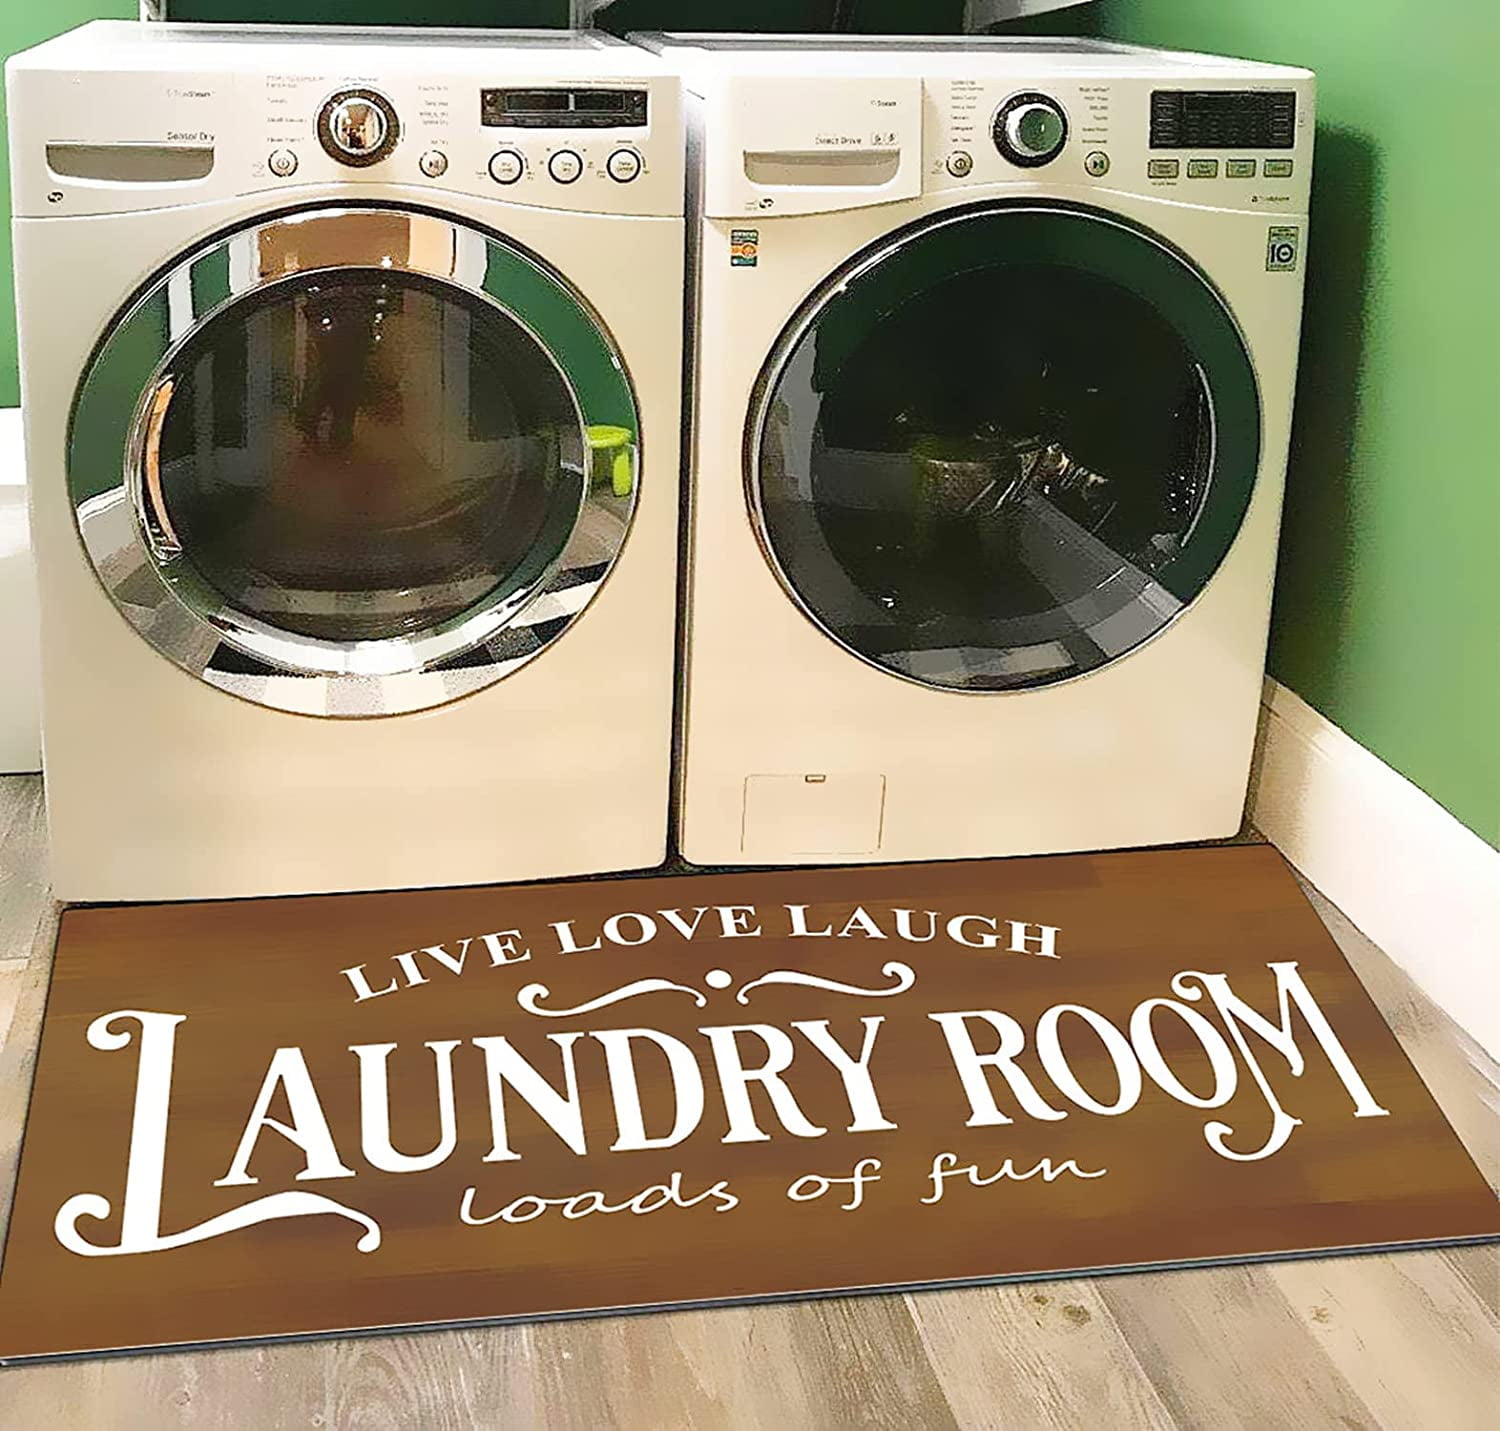 Runner Rug Laundry Room Floor Mat Doormat Carpets Rustic Color Waterproof 